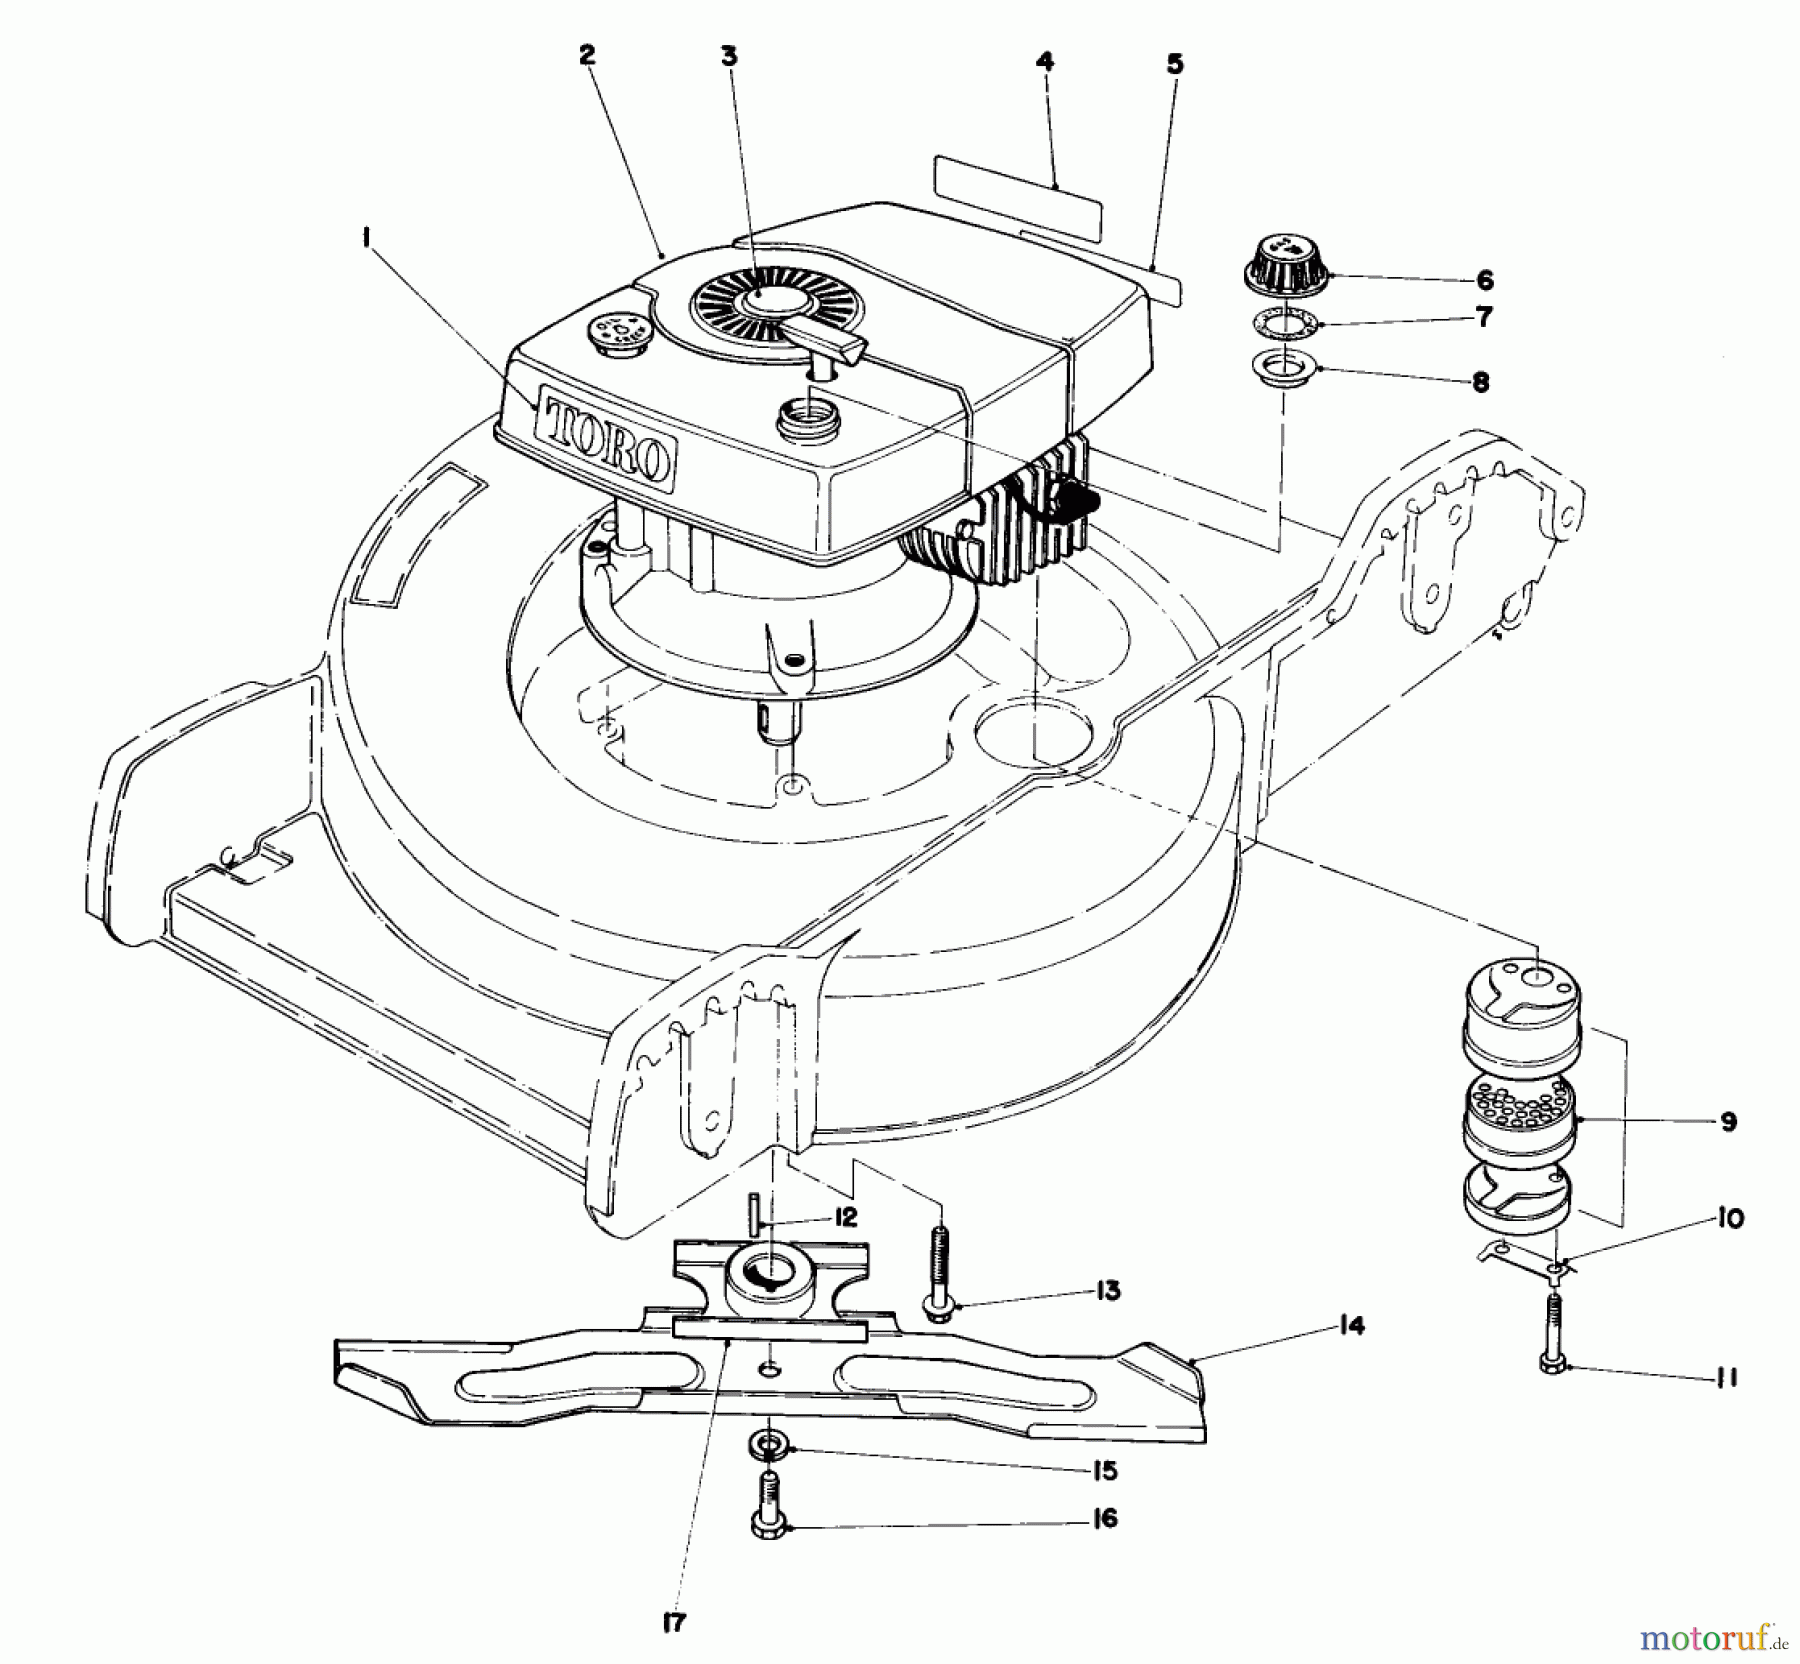  Toro Neu Mowers, Walk-Behind Seite 1 20762 - Toro Lawnmower, 1980 (0000001-0999999) ENGINE ASSEMBLY